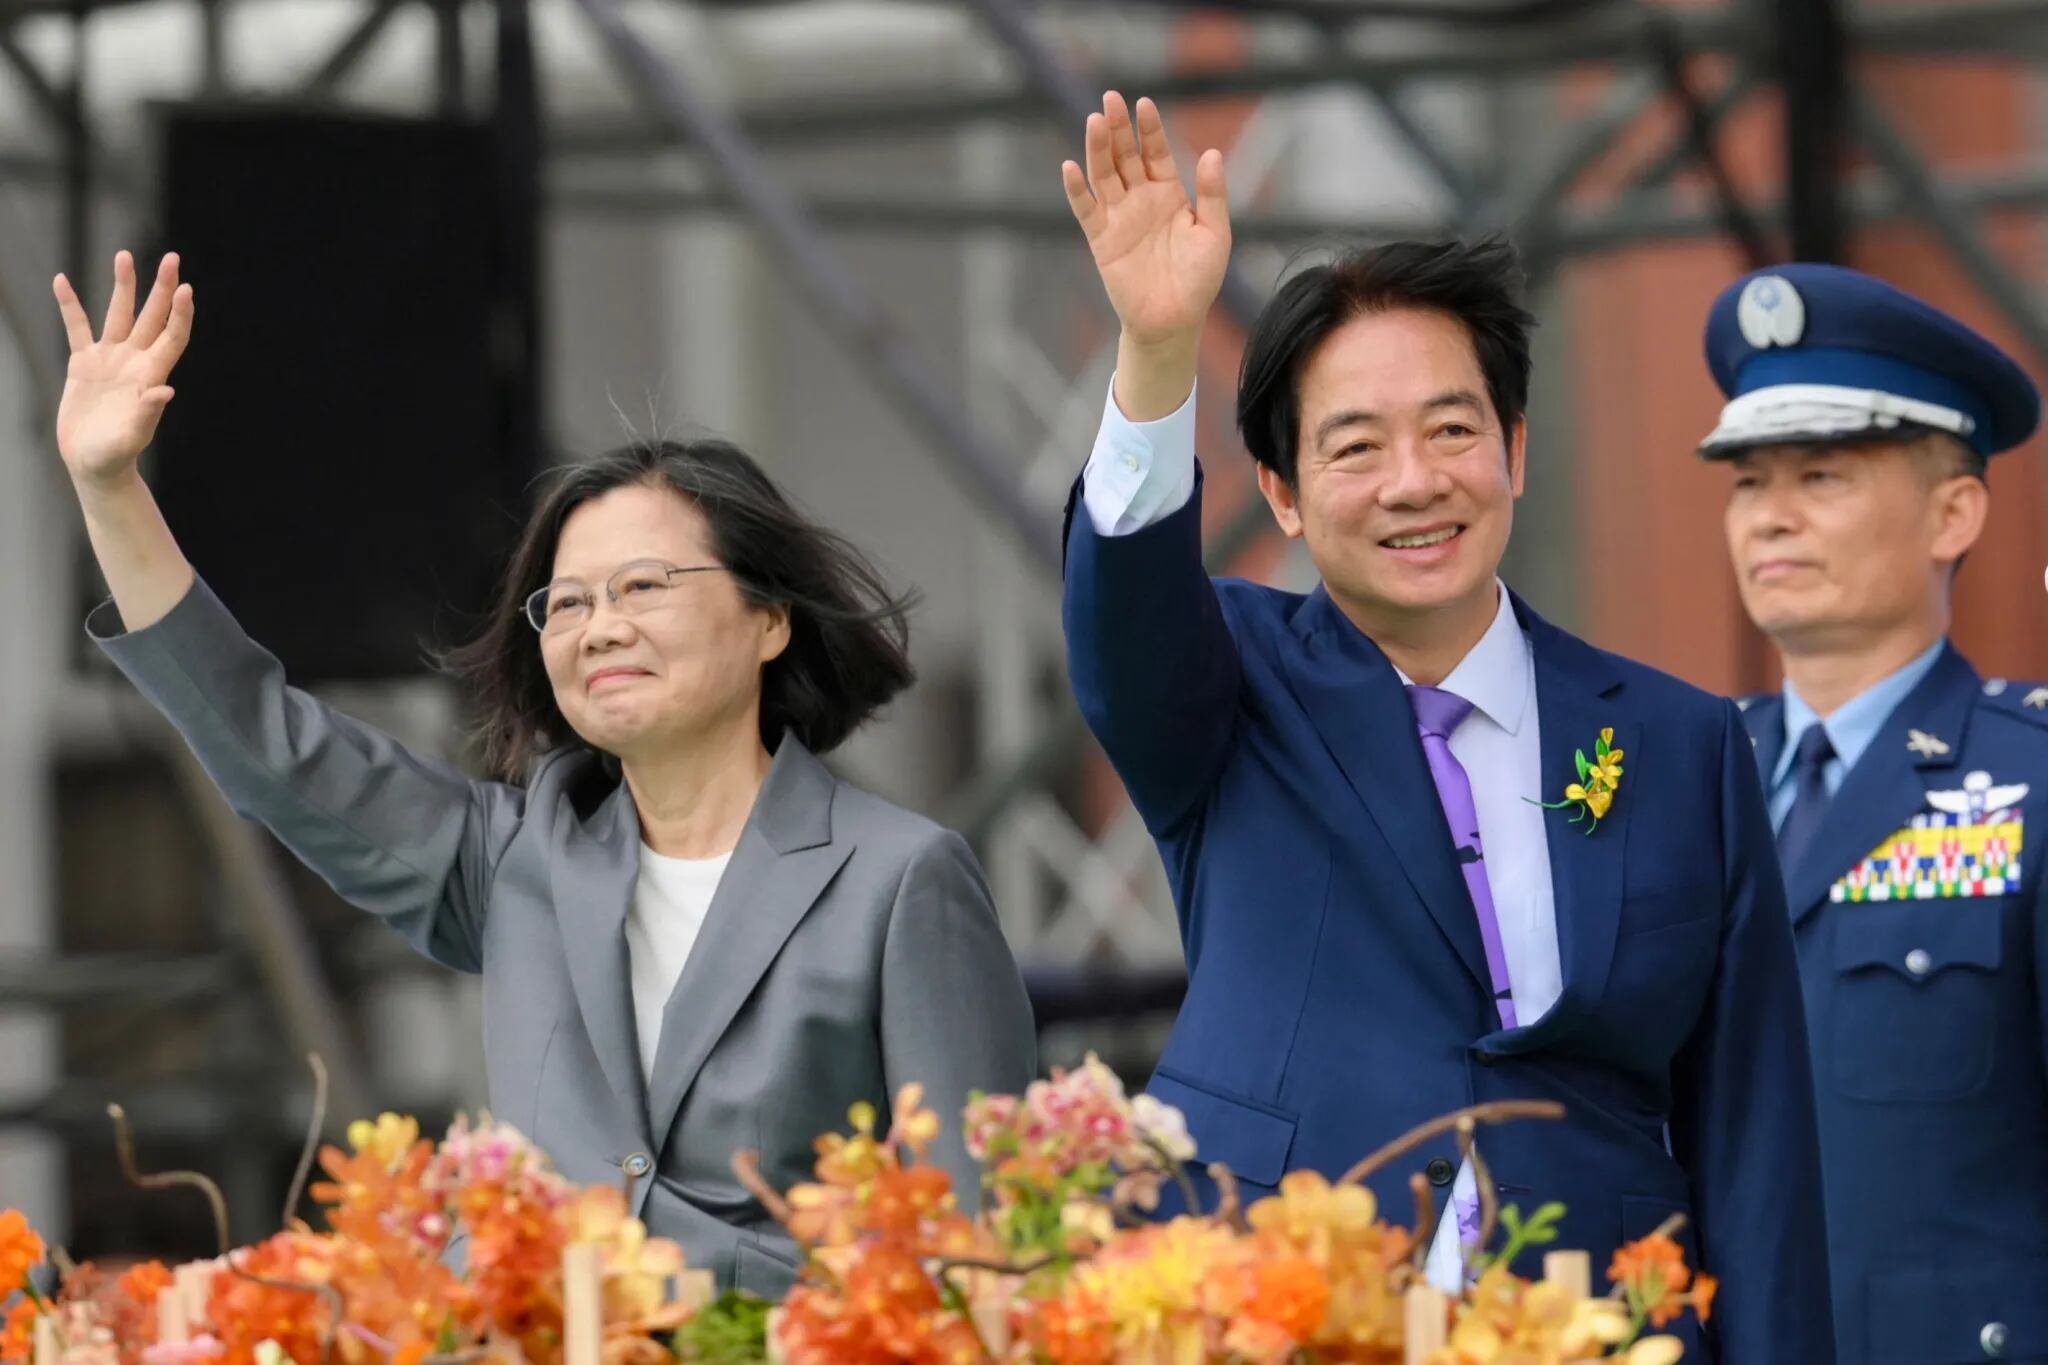 El nuevo presidente de Taiwán, William Lai Ching-te (derecha), saluda junto a la presidenta saliente, Tsai Ing-wen, durante la ceremonia de inauguración (Sam Yeh/AFP)